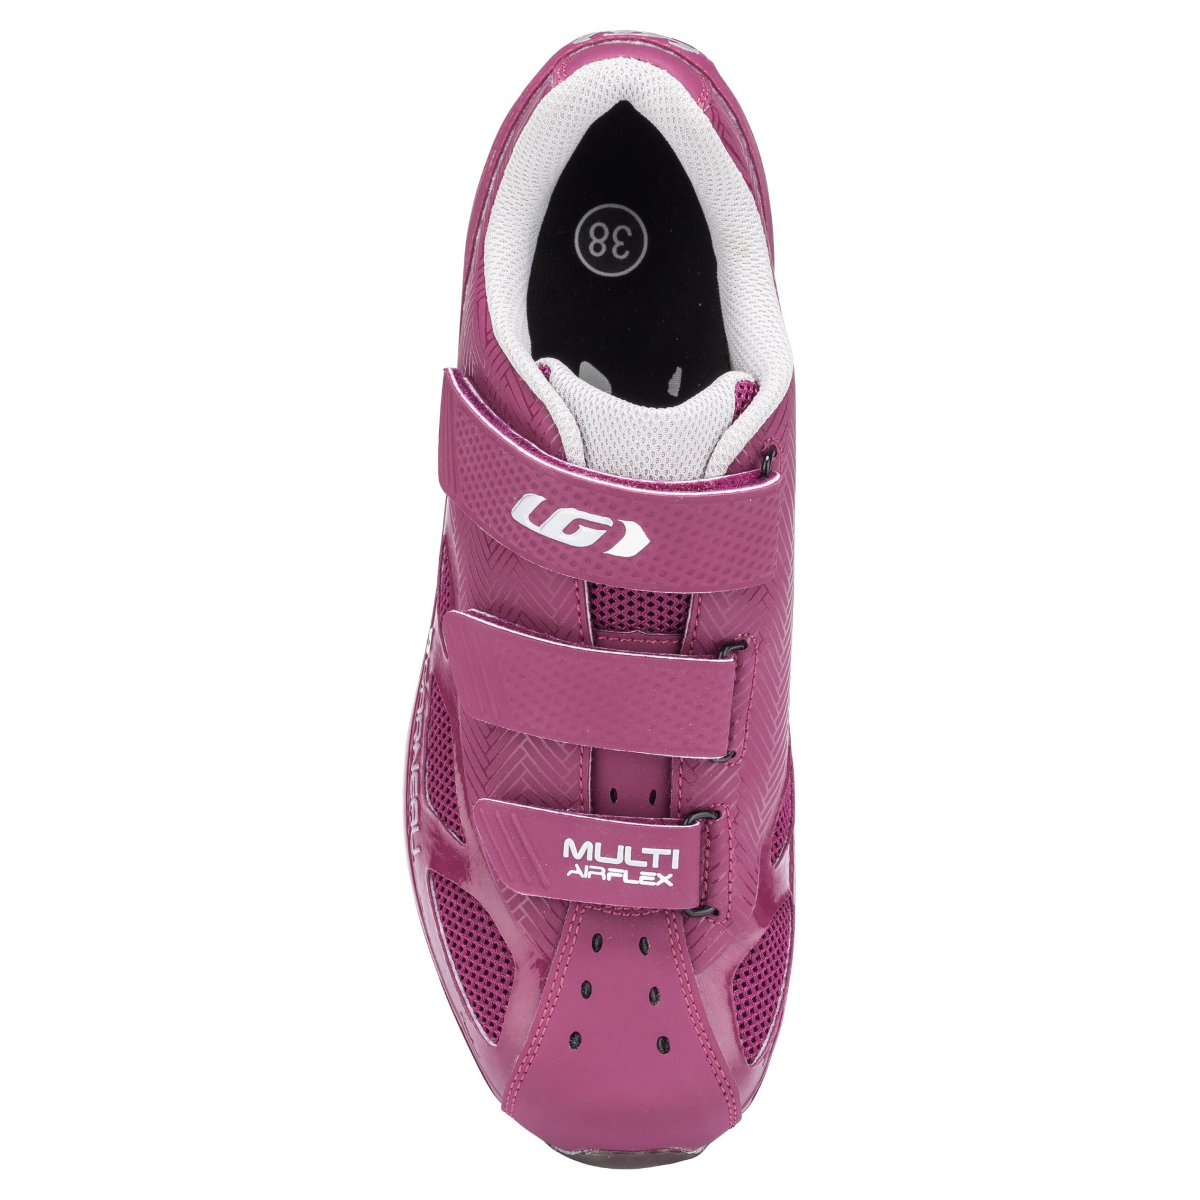 louis garneau women's multi air flex cycling shoes